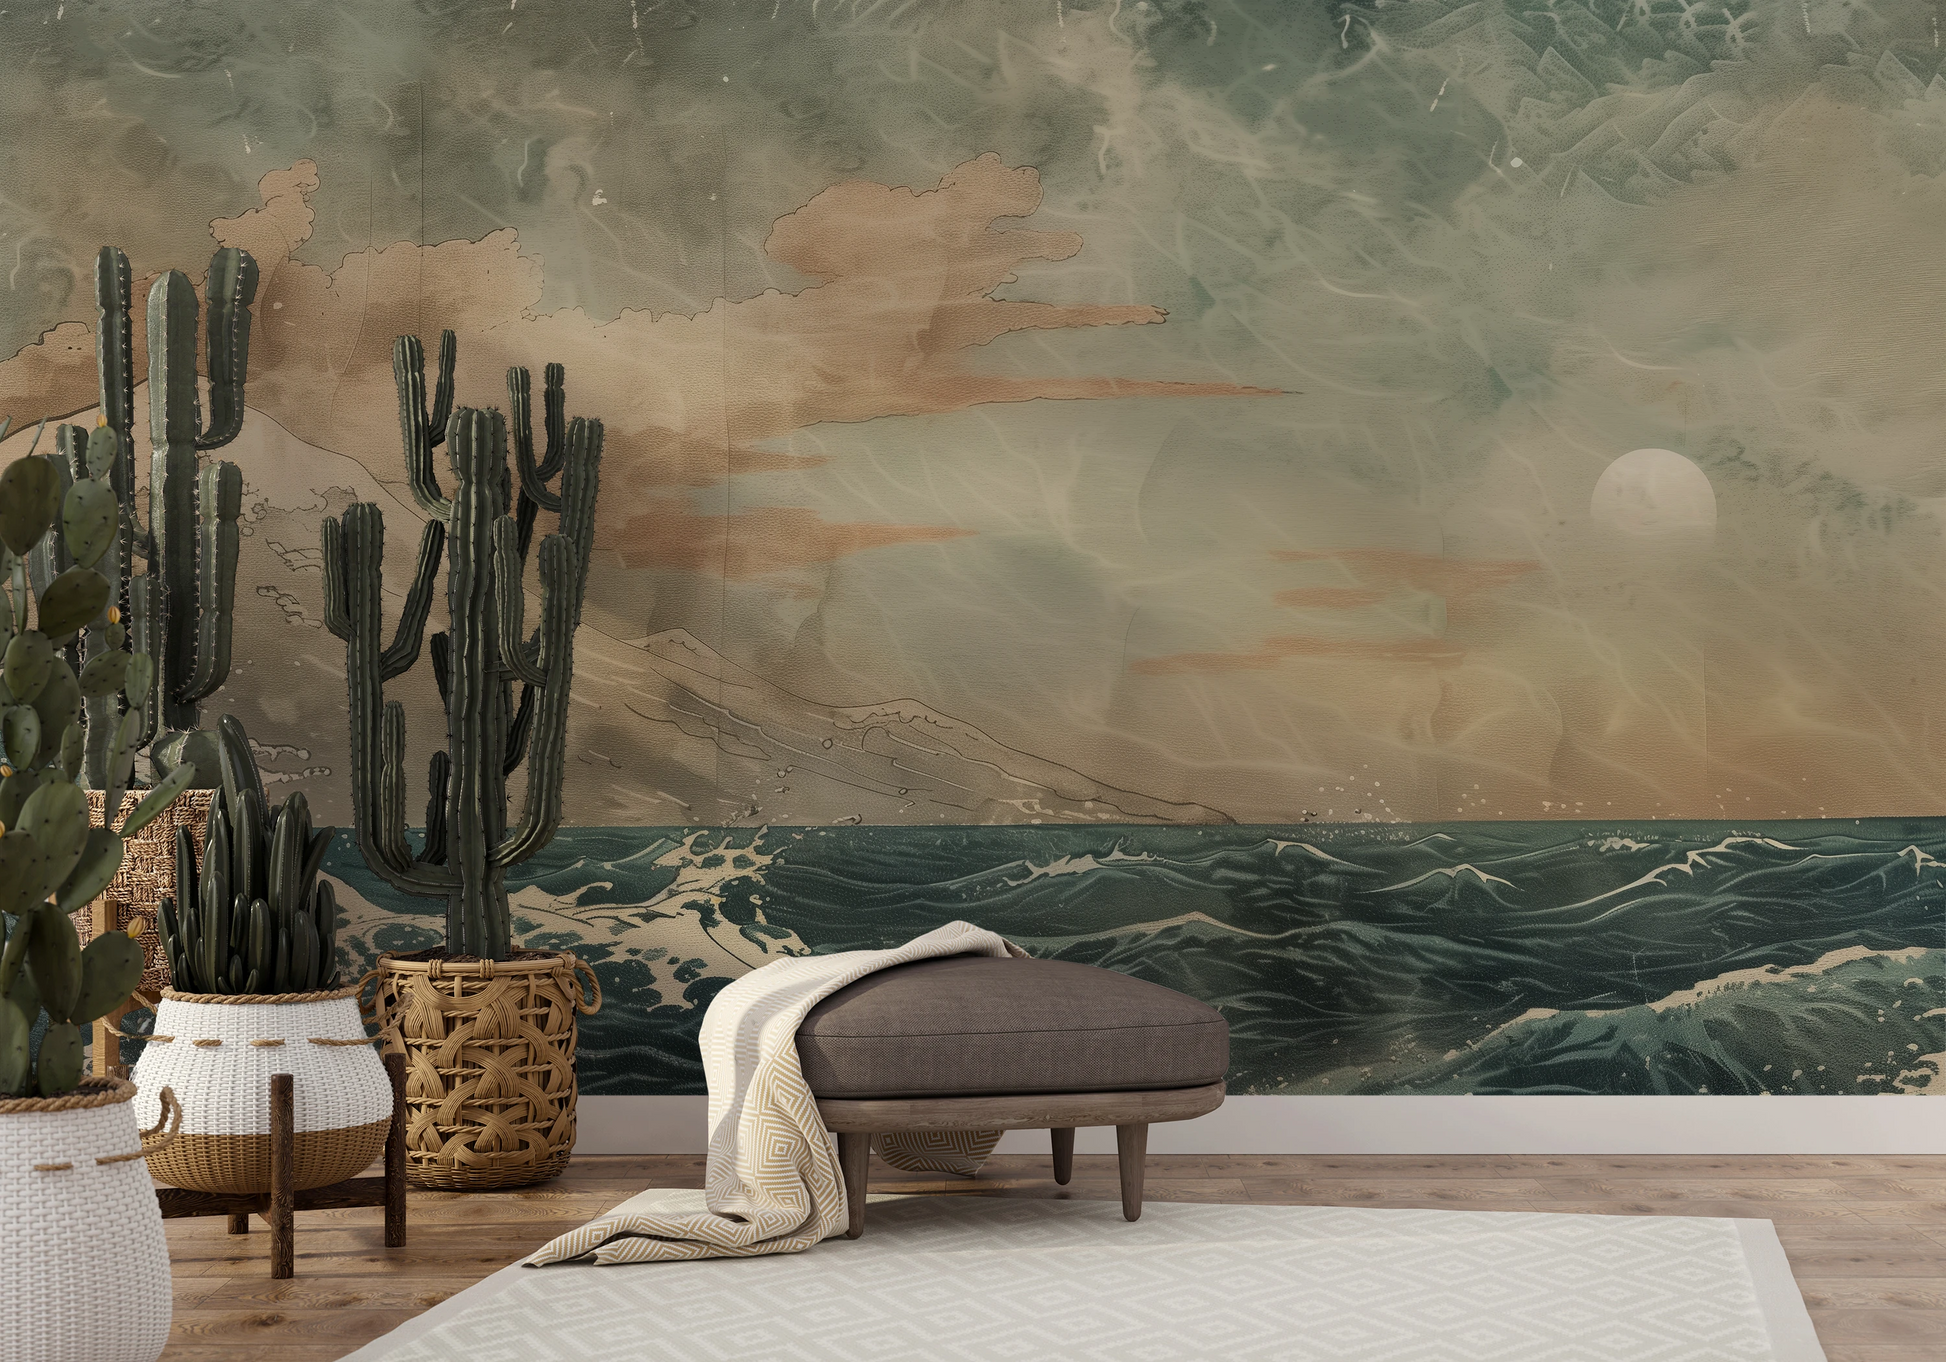 Fototapeta artystyczna o nazwie Moonlit Ocean Serenade pokazana w aranżacji wnętrza.